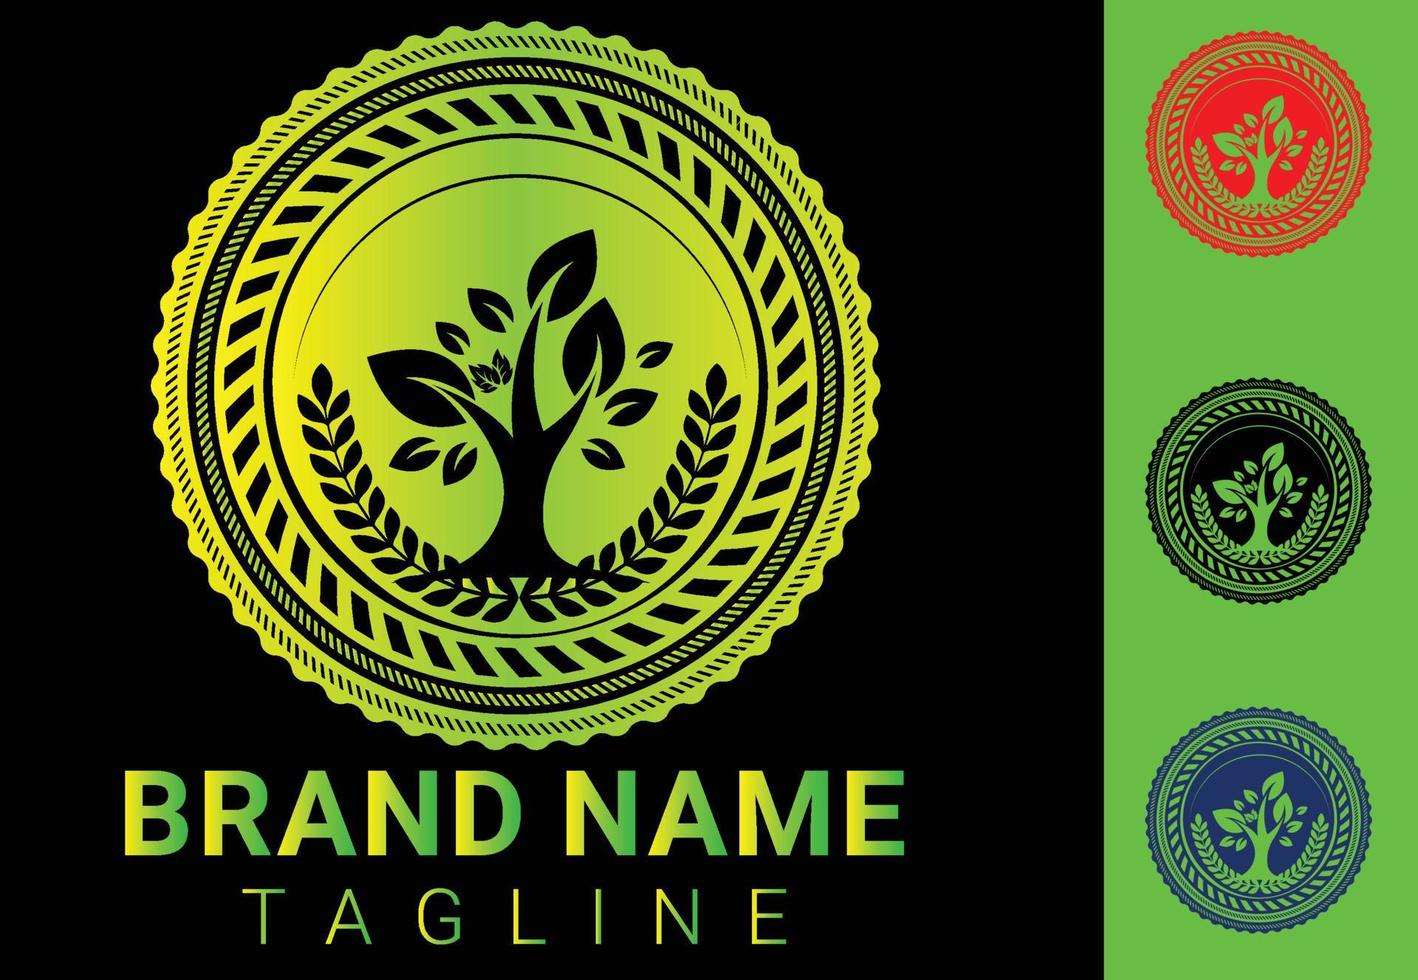 kreatives grünes Blatt-Logo und Icon-Design-Vorlage vektor